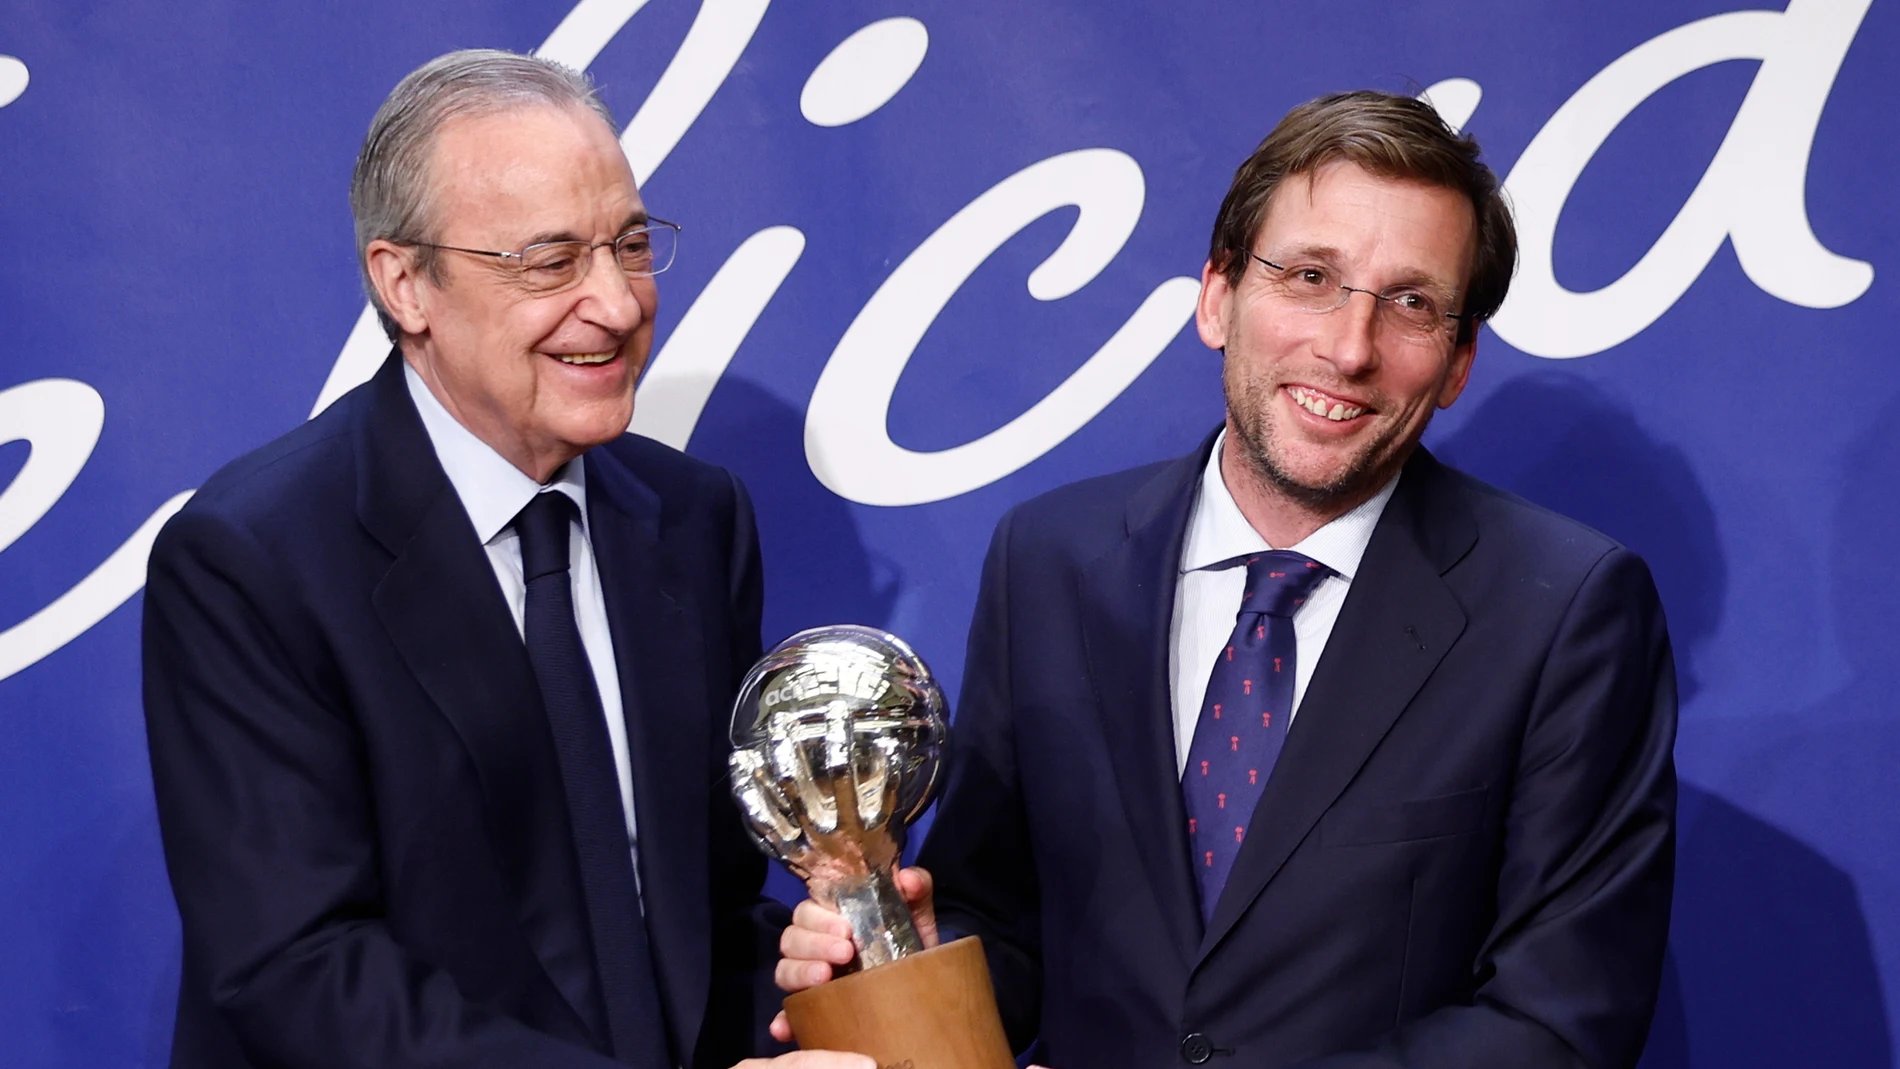  El alcalde de Madrid, José Luis Martínez-Almeida, junto al presidente del Real Madrid, Florentino Pérez